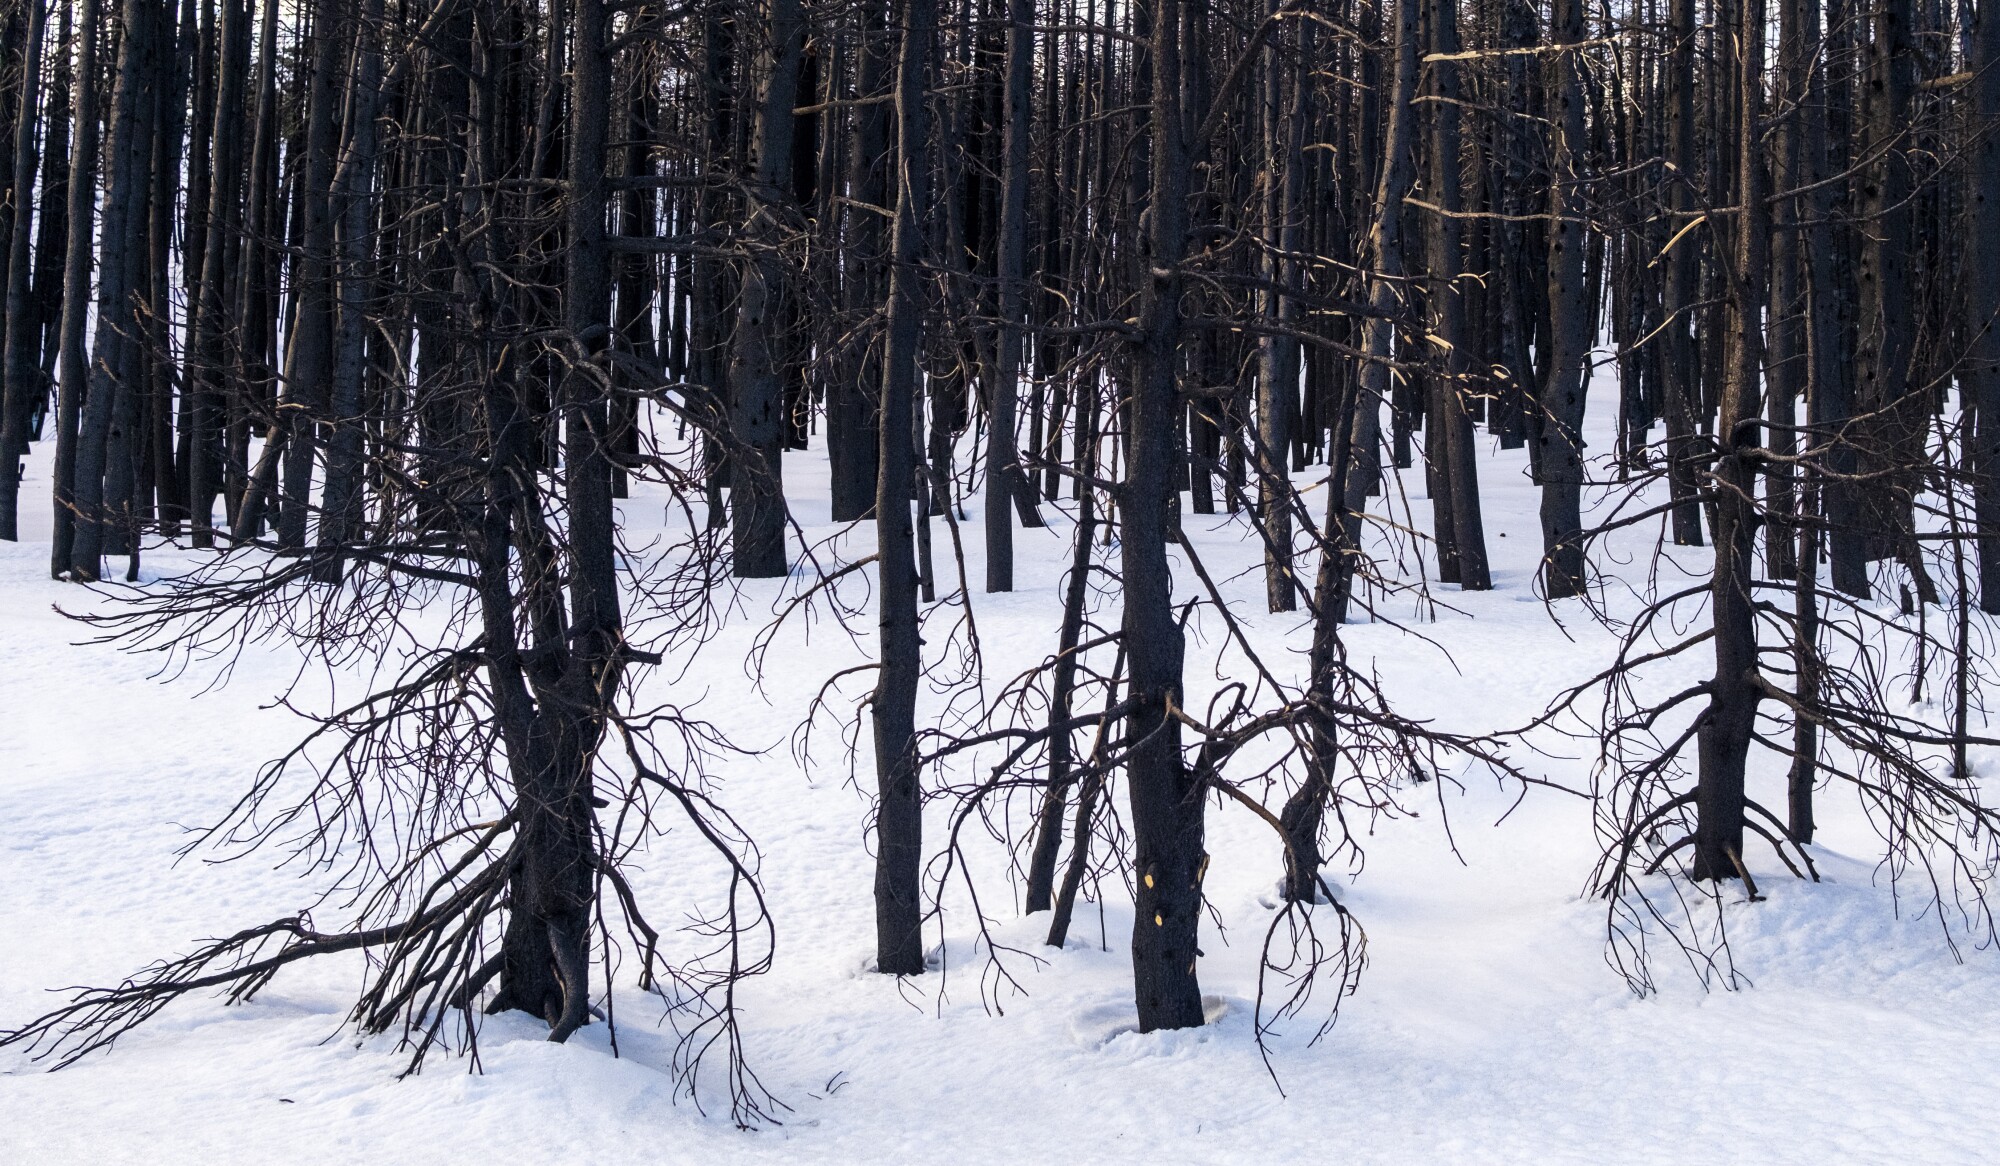 از روی زمین پوشیده از برف، تنه های شلوغ درختان کوچکی که از آتش سیاه شده اند، بلند می شوند 